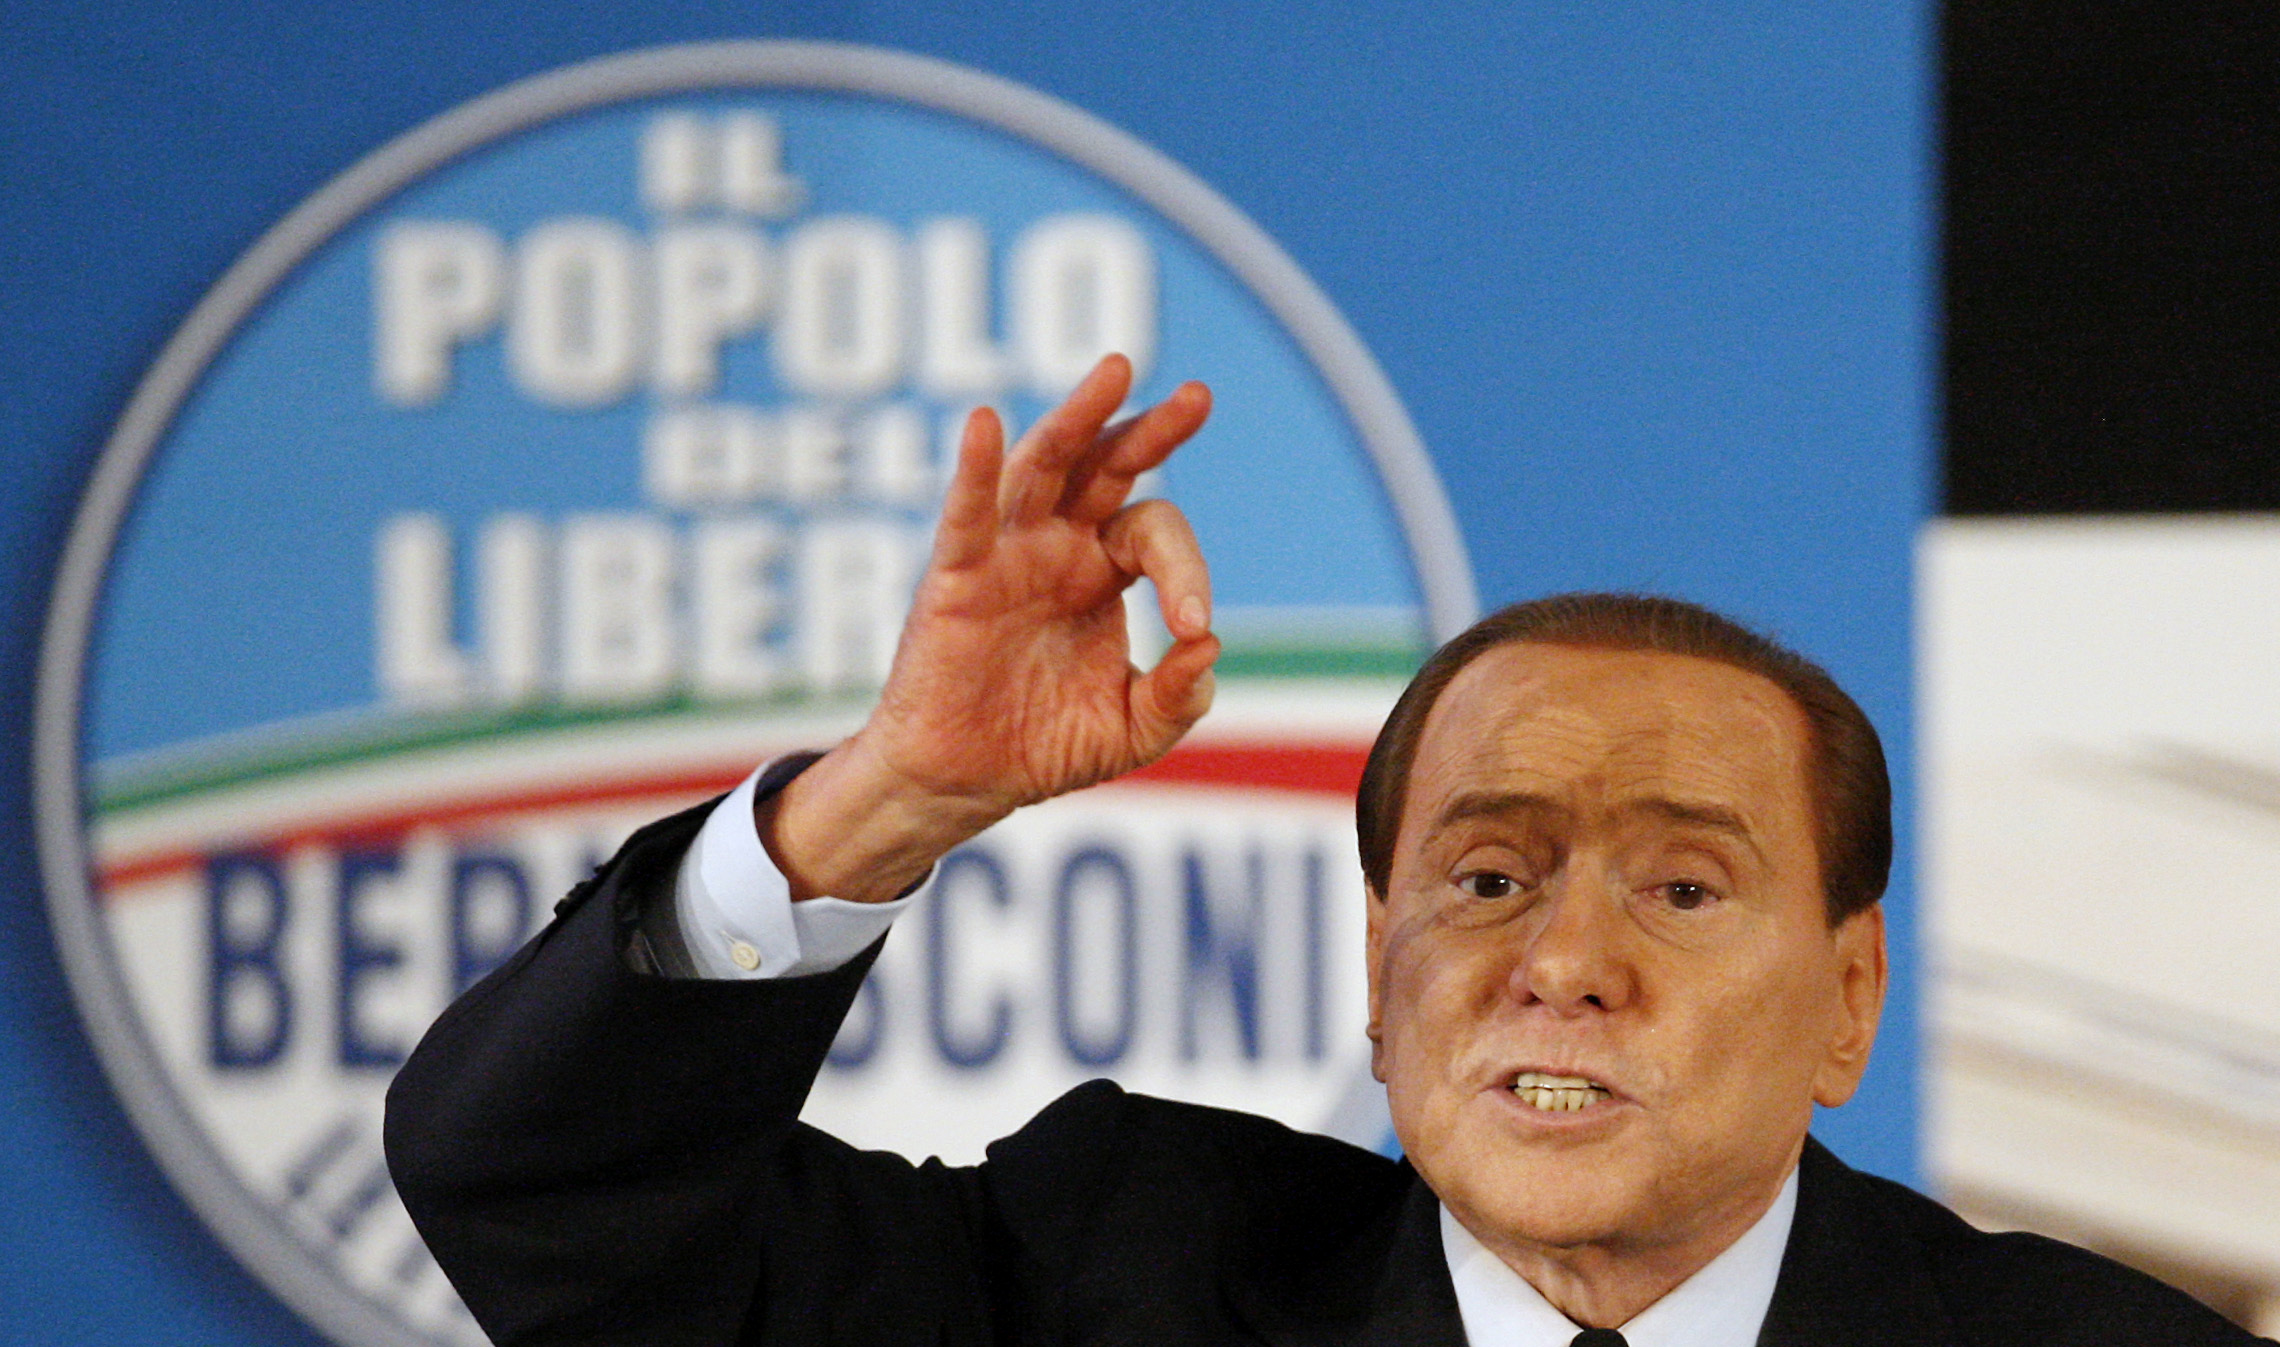 Skandal, Silvio Berlusconi, Italien, Berlusconi, Sex- och samlevnad, Skämt, Rom, homofobi